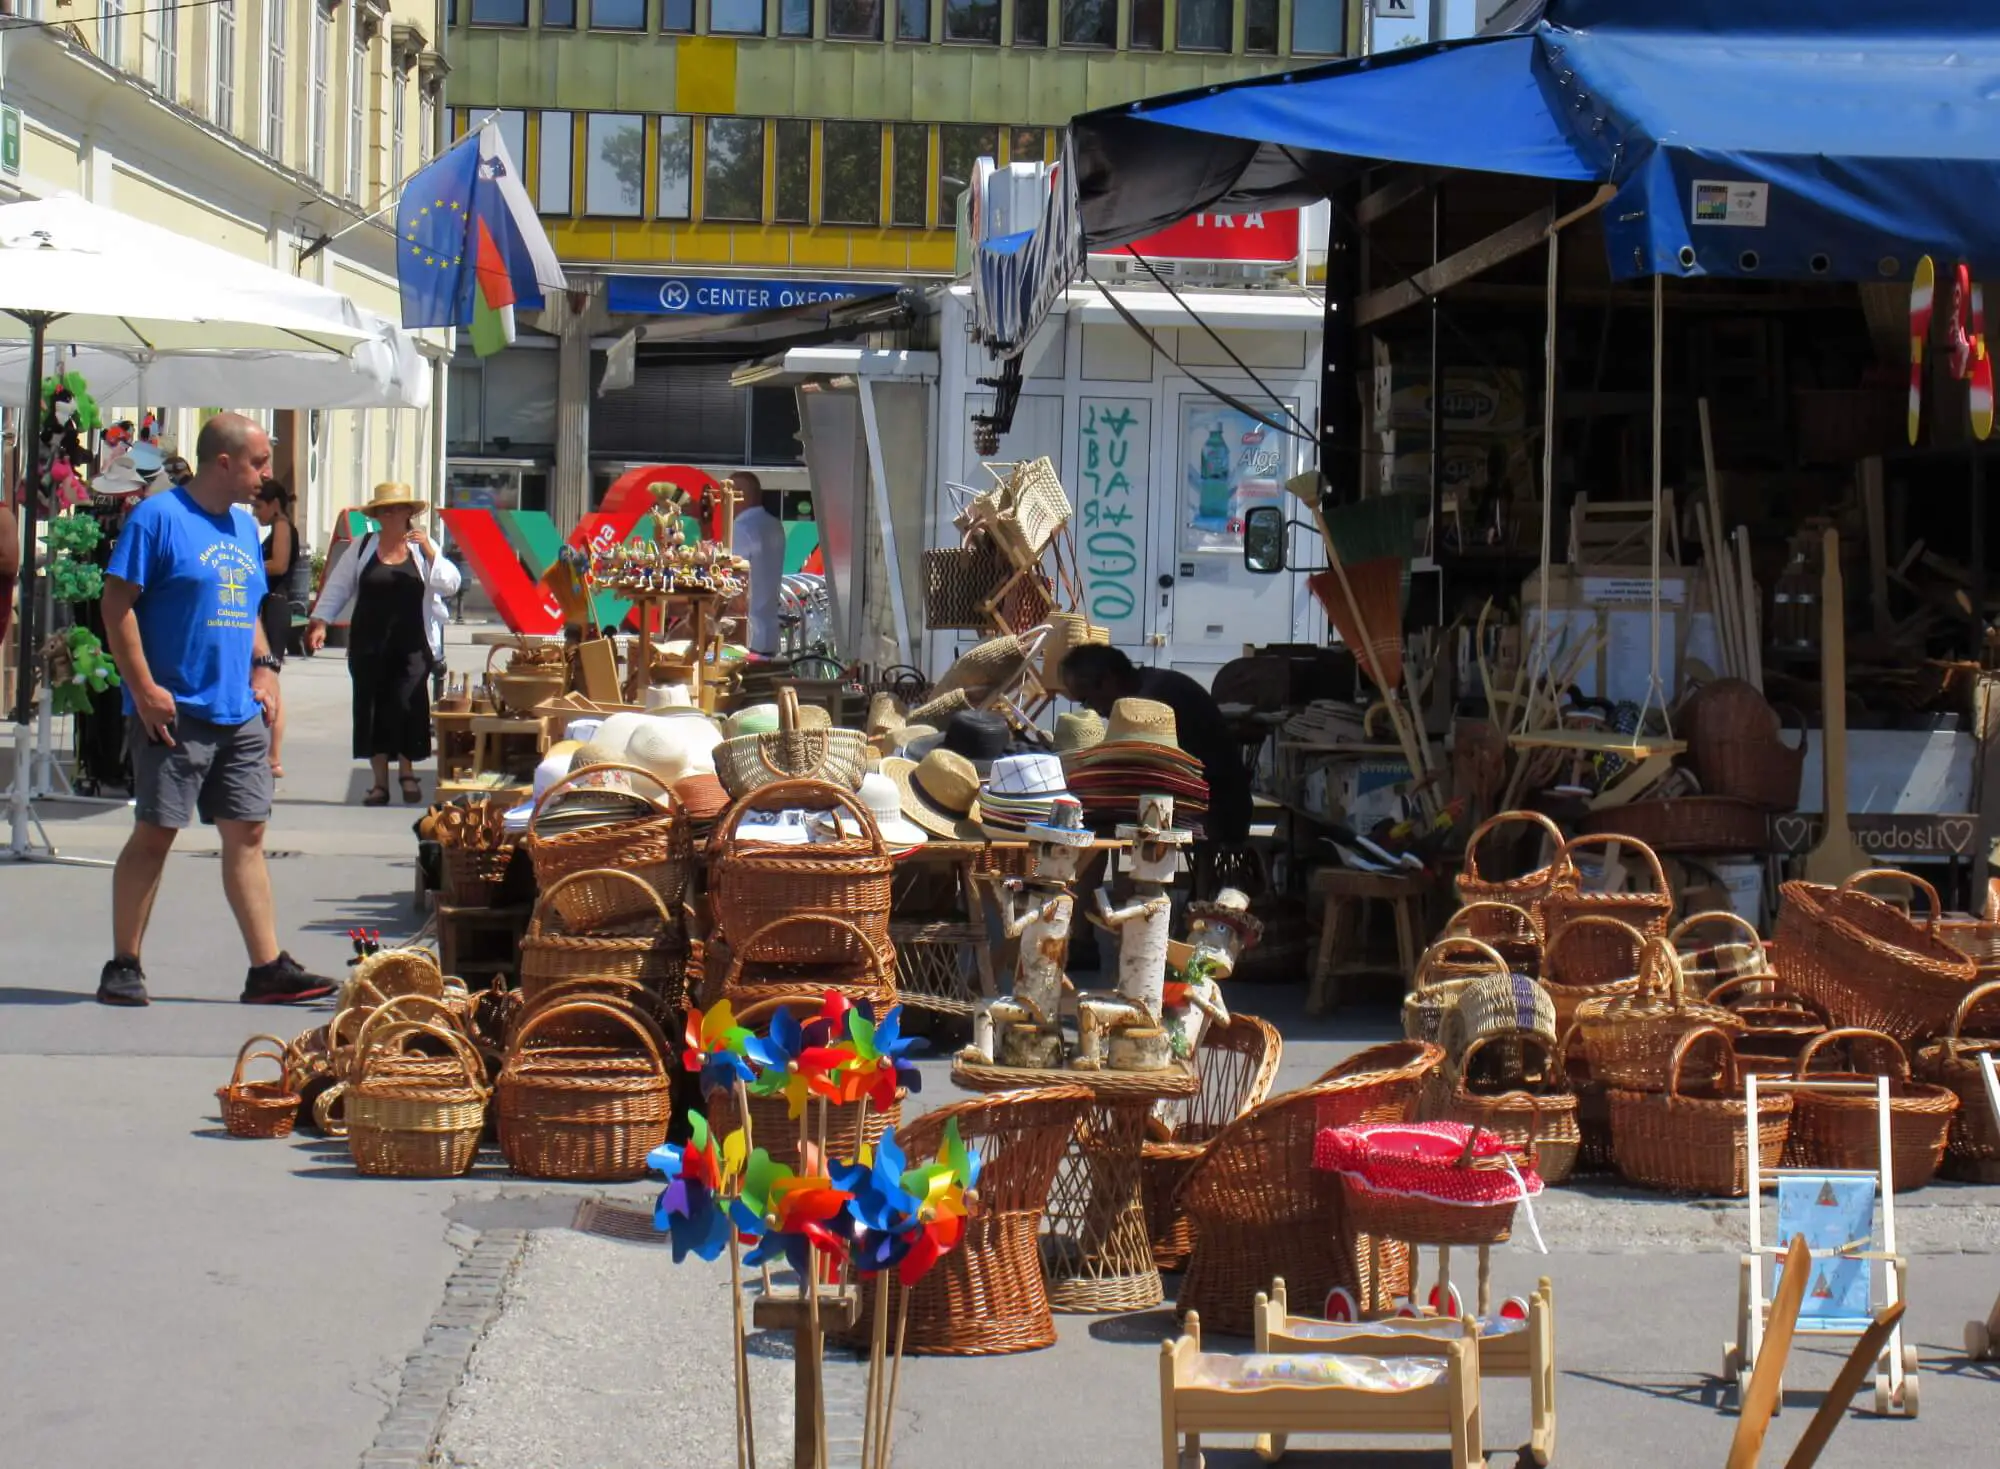 jl flanner august 2019 ljubljana market hats summer.jpg